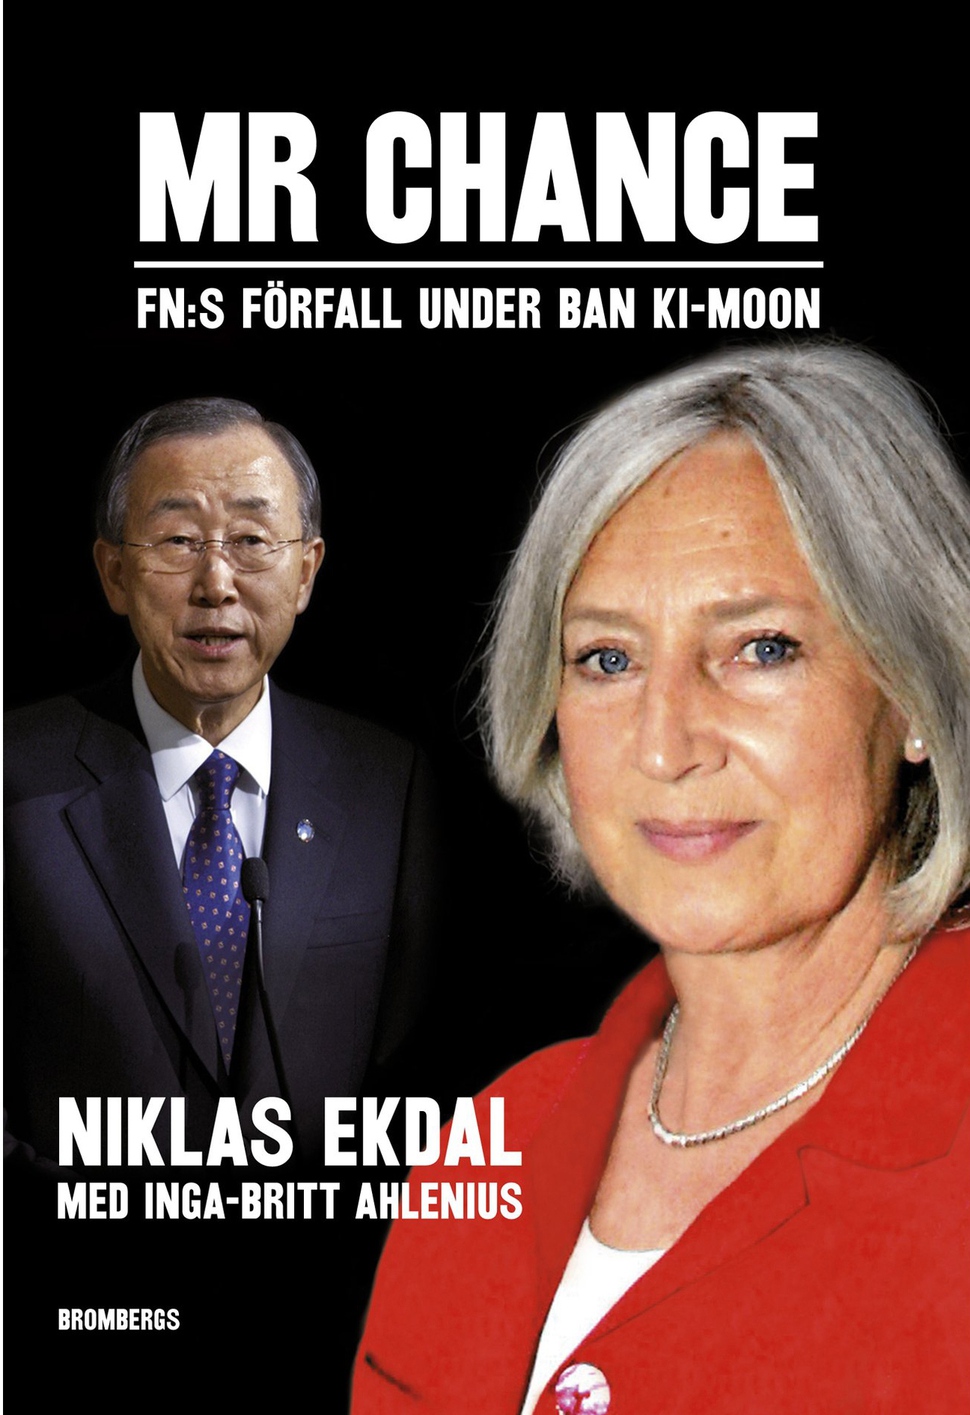 알레니우스 전 유엔 감찰실장이 2011년 스웨덴 기자 니클라스 에크달과 함께 펴낸 <미스터 찬스: 반기문 재임 기간 중 쇠퇴한 유엔>의 표지.